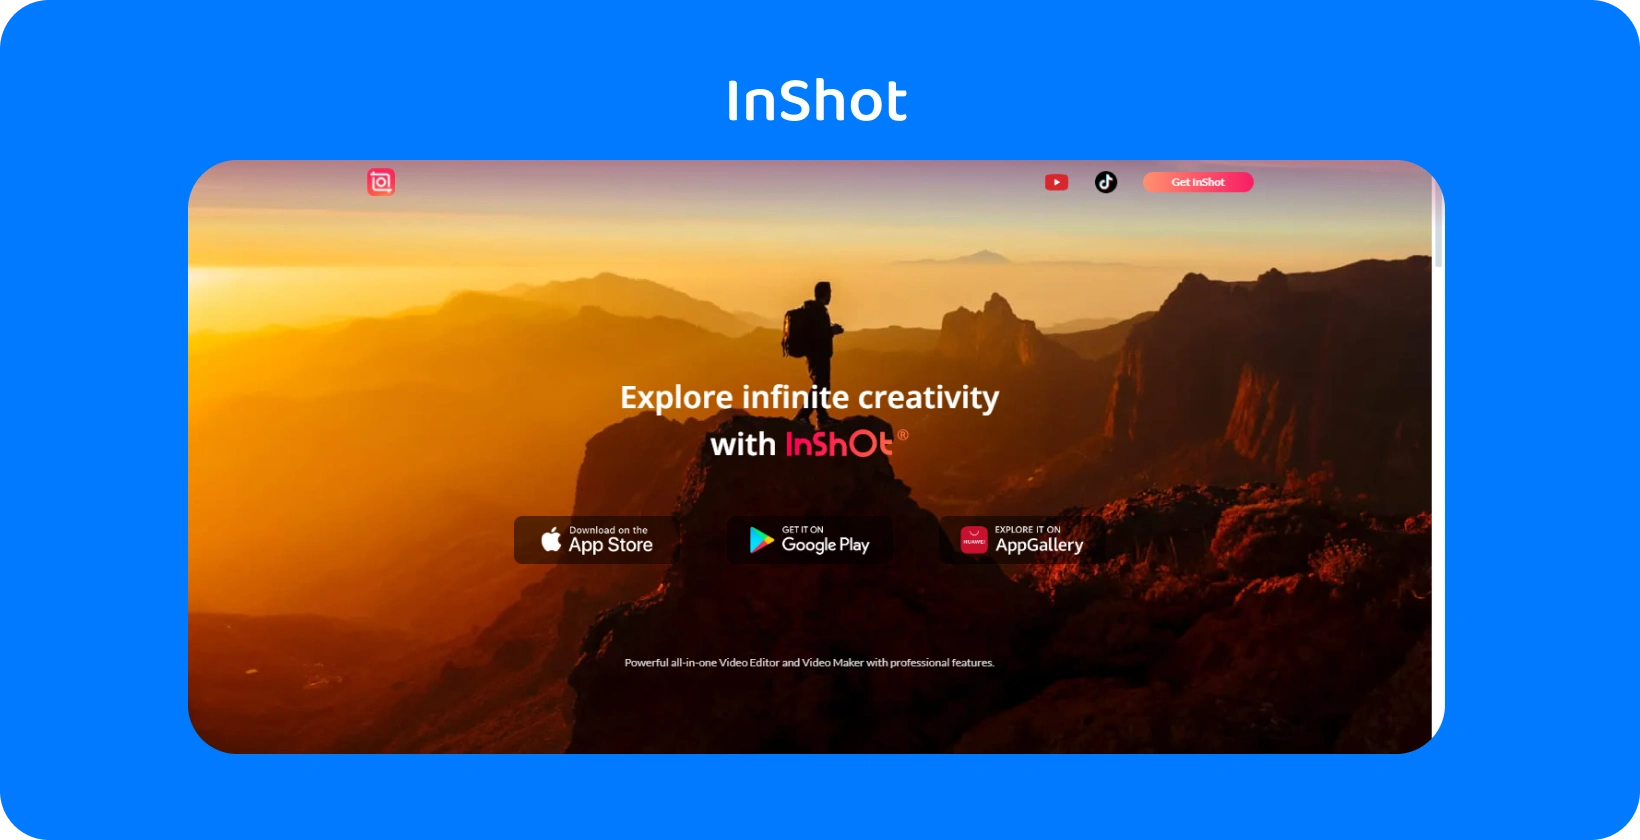 InShot anunț al aplicației care prezintă un excursionist la apus, simbolizând promisiunea aplicației de a explora creativitatea infinită în editarea video.
